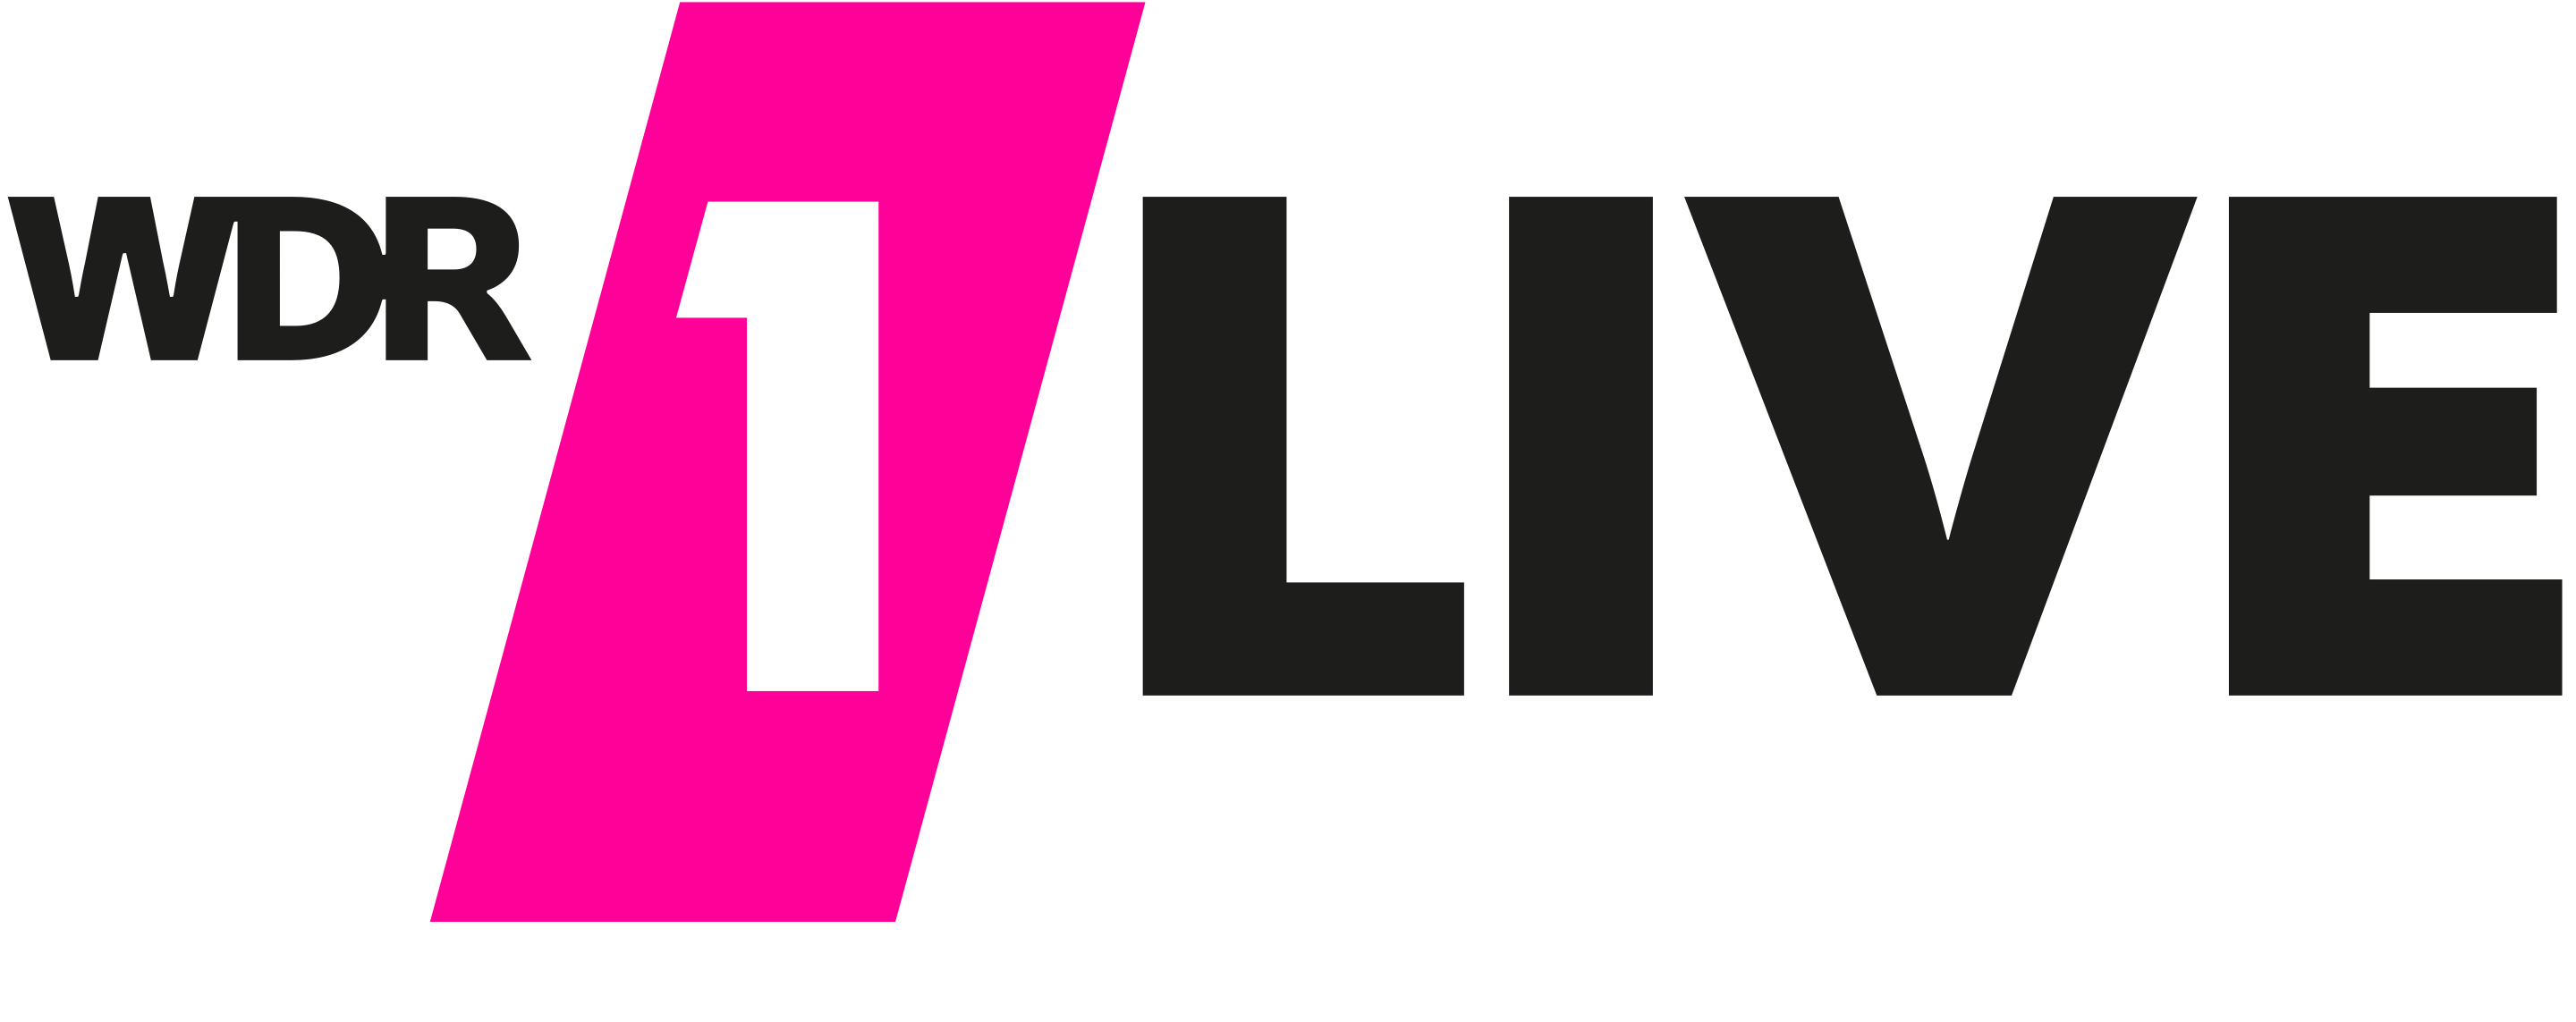 2880px-WDR_1LIVE_Logo_2016.svg